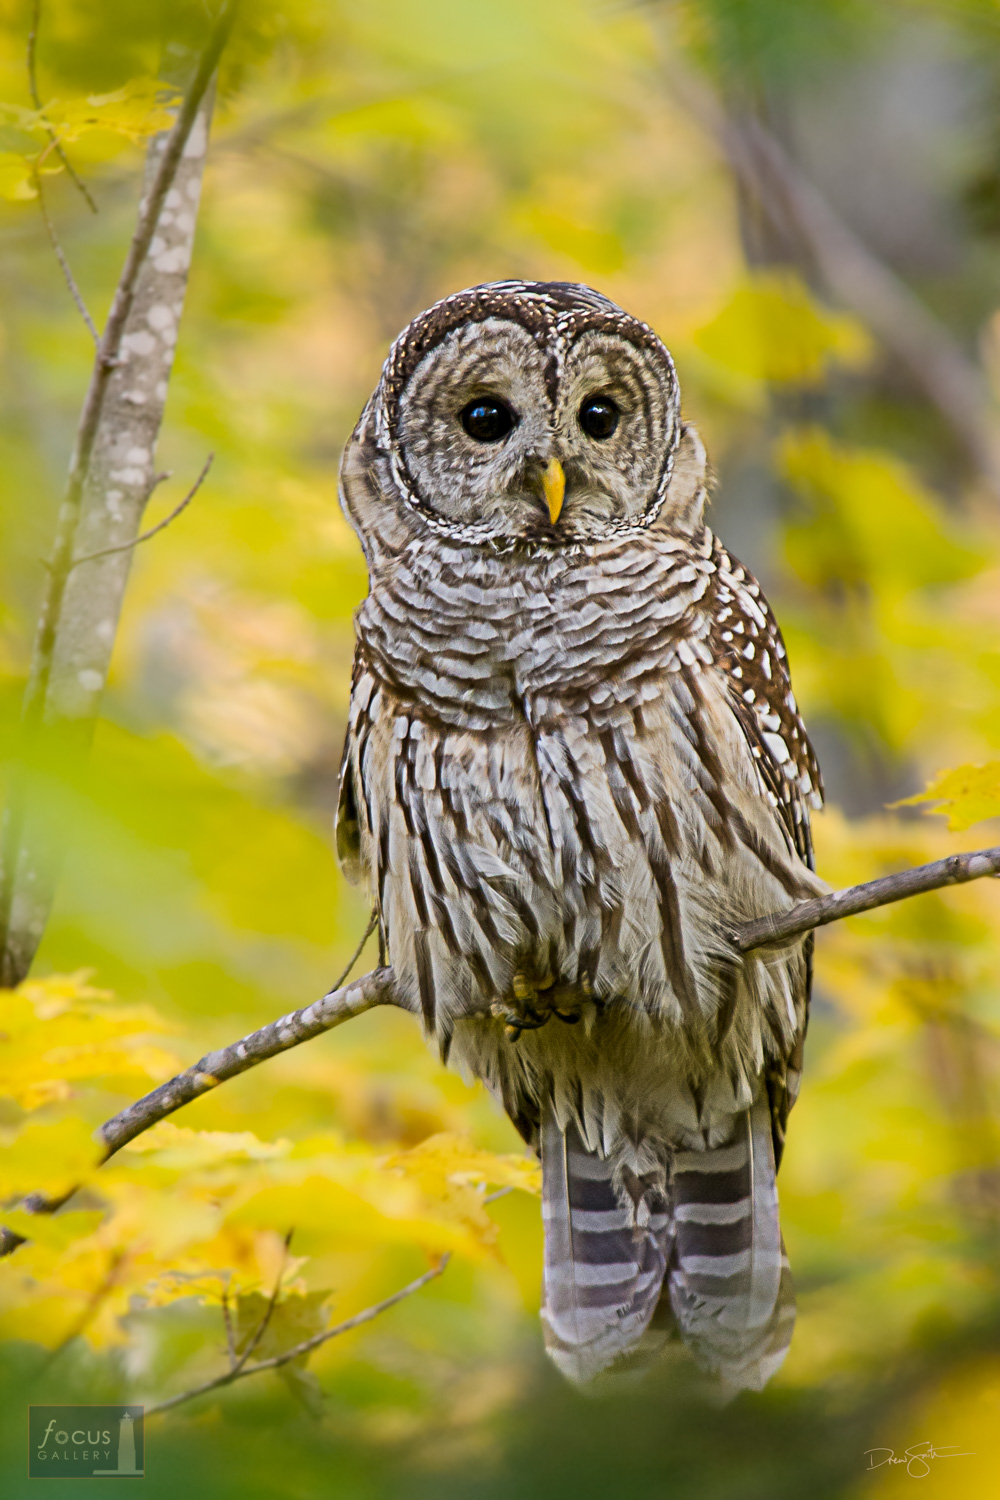 A Barred Owl (Strix varia) amidst autumn colors.